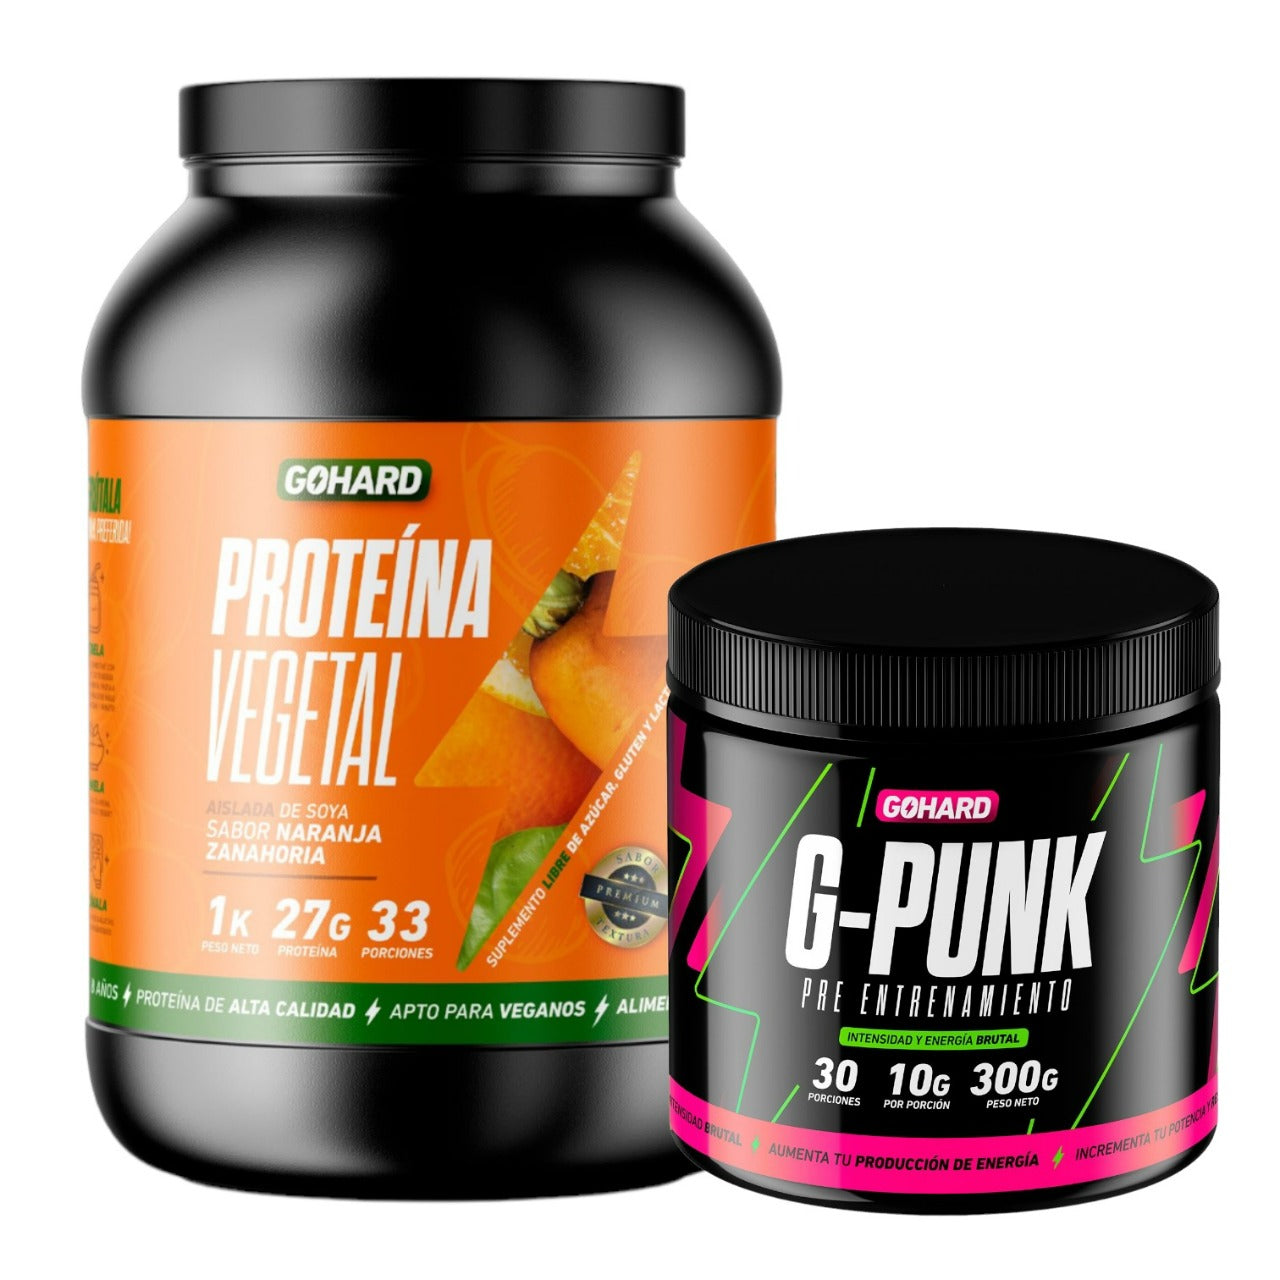 Proteina Vegetal + Pre Entrenamiento G-punk Gohard